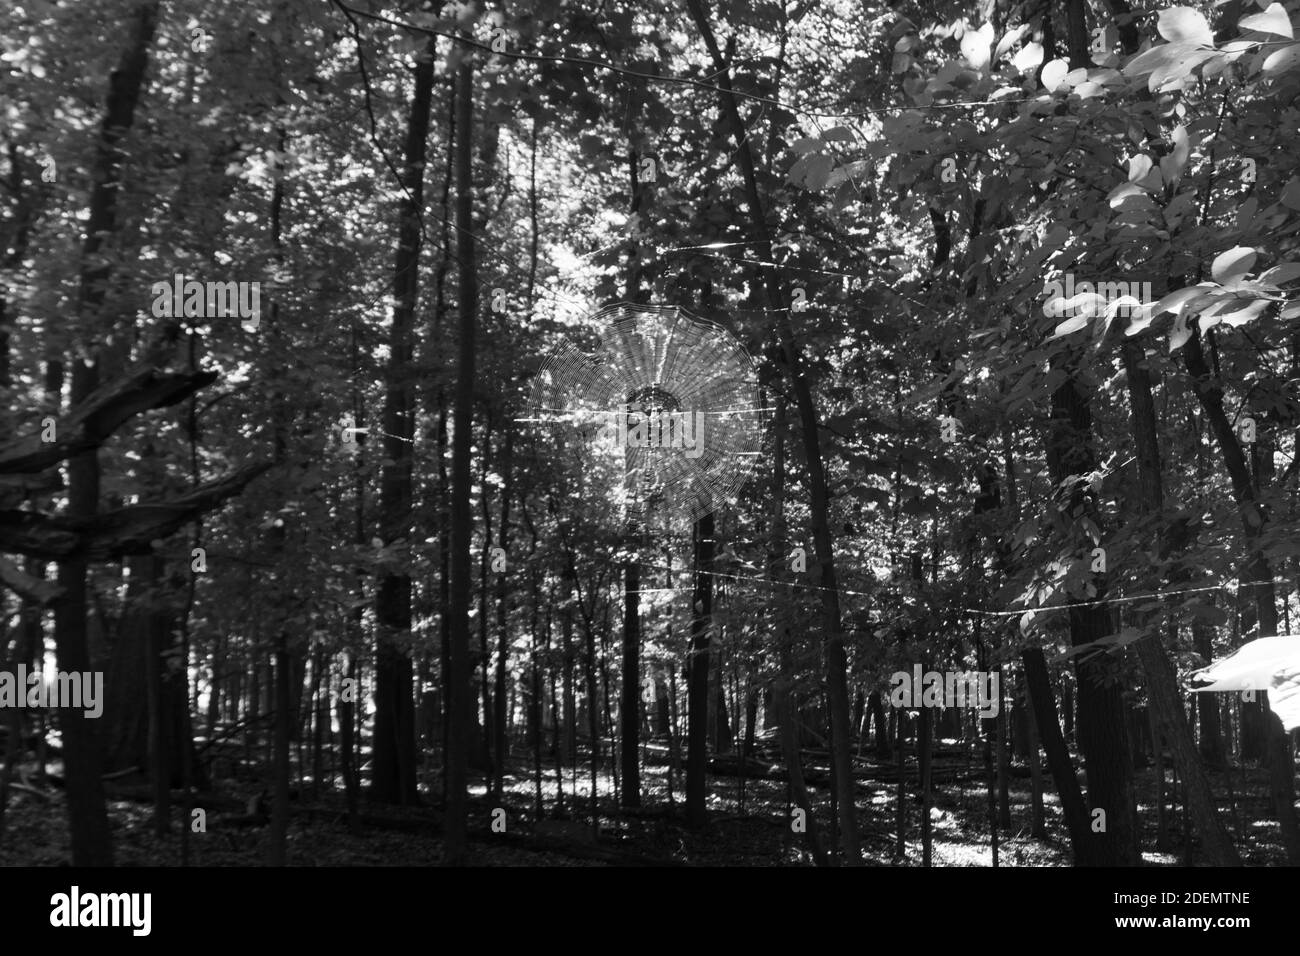 WOODLAND PARK, VEREINIGTE STAATEN - Sep 20, 2020: spinnennetz im Wald unter 9/19/2020 Stockfoto